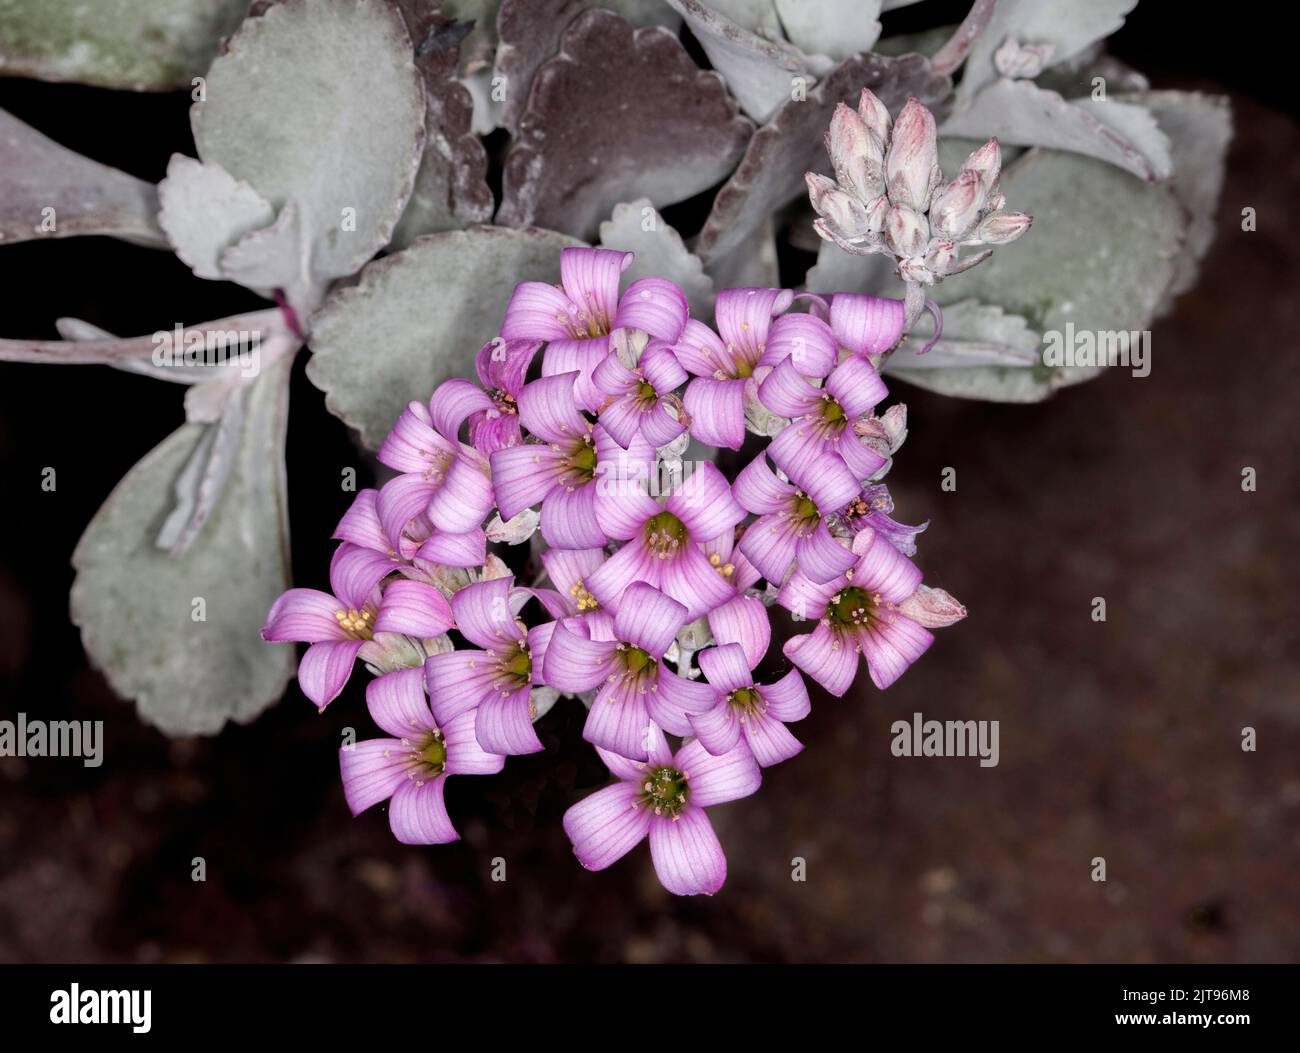 Groupe de fleurs rose pâle de plante succulente tolérante à la sécheresse Kalanchoe pumila 'Quick Silver' avec des feuilles gris argenté sur fond sombre Banque D'Images